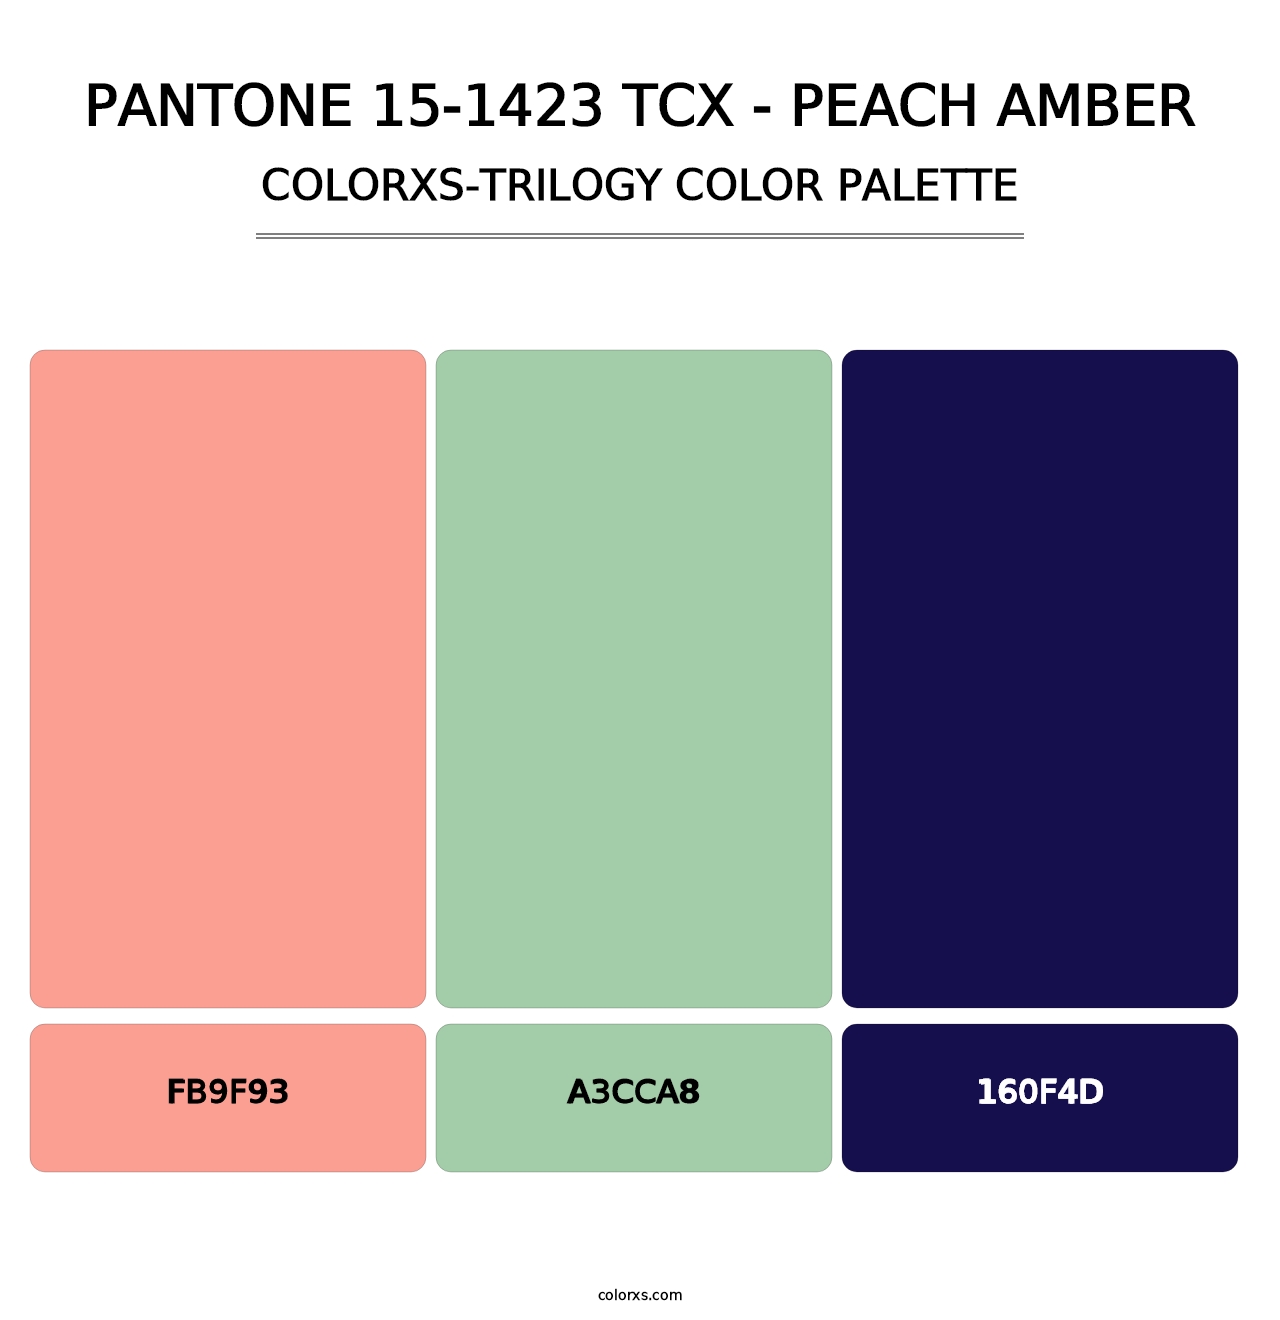 PANTONE 15-1423 TCX - Peach Amber - Colorxs Trilogy Palette